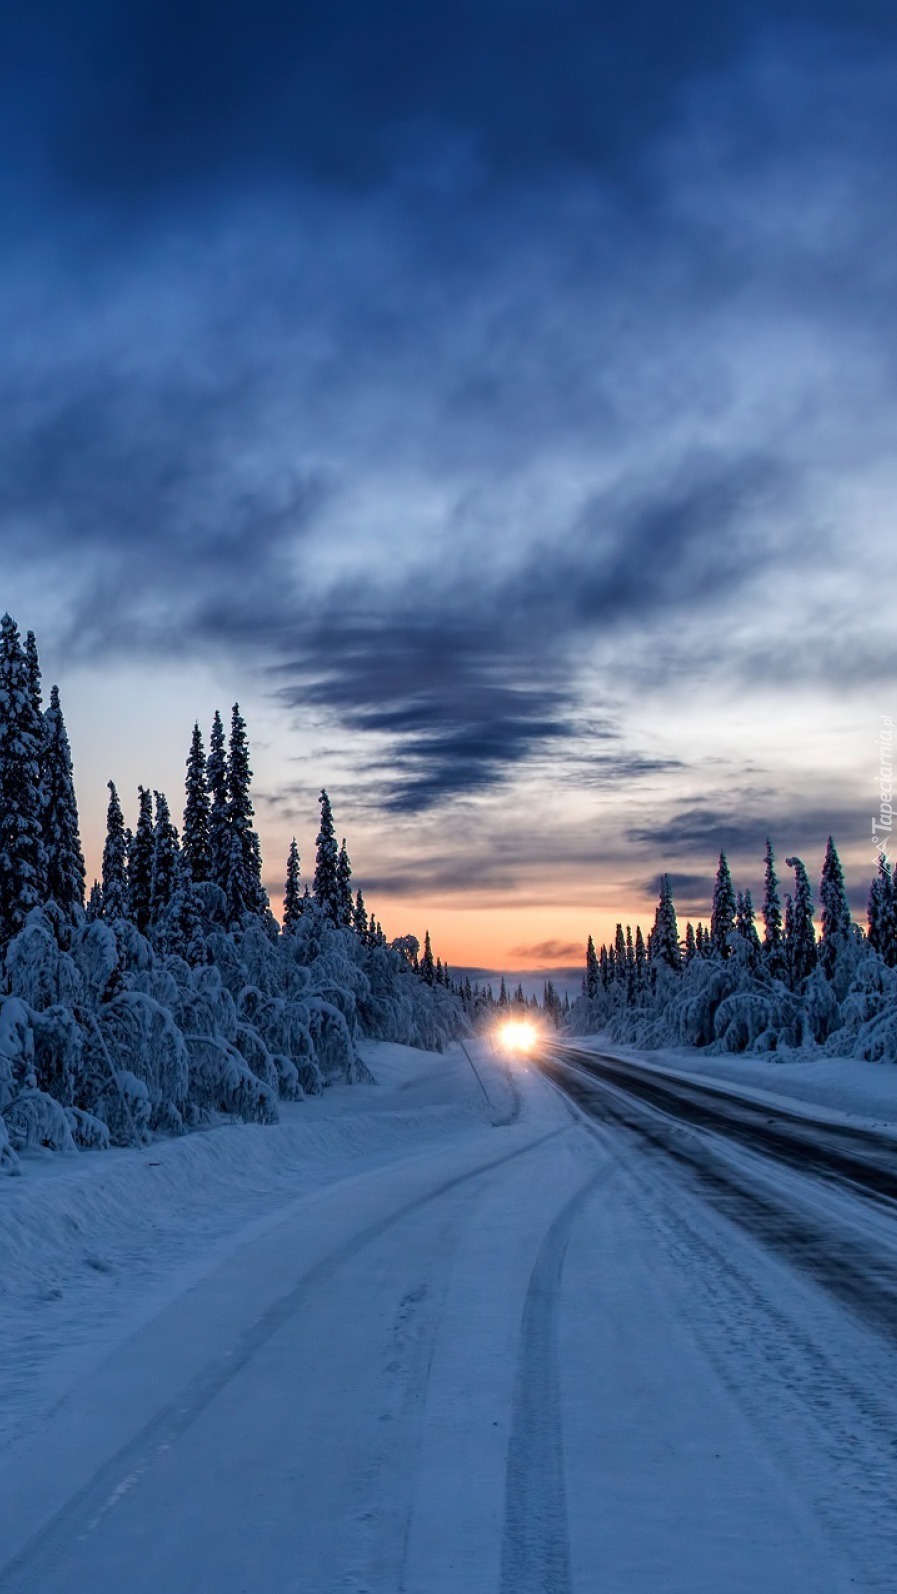 Światła samochodu na drodze w zimowym lesie